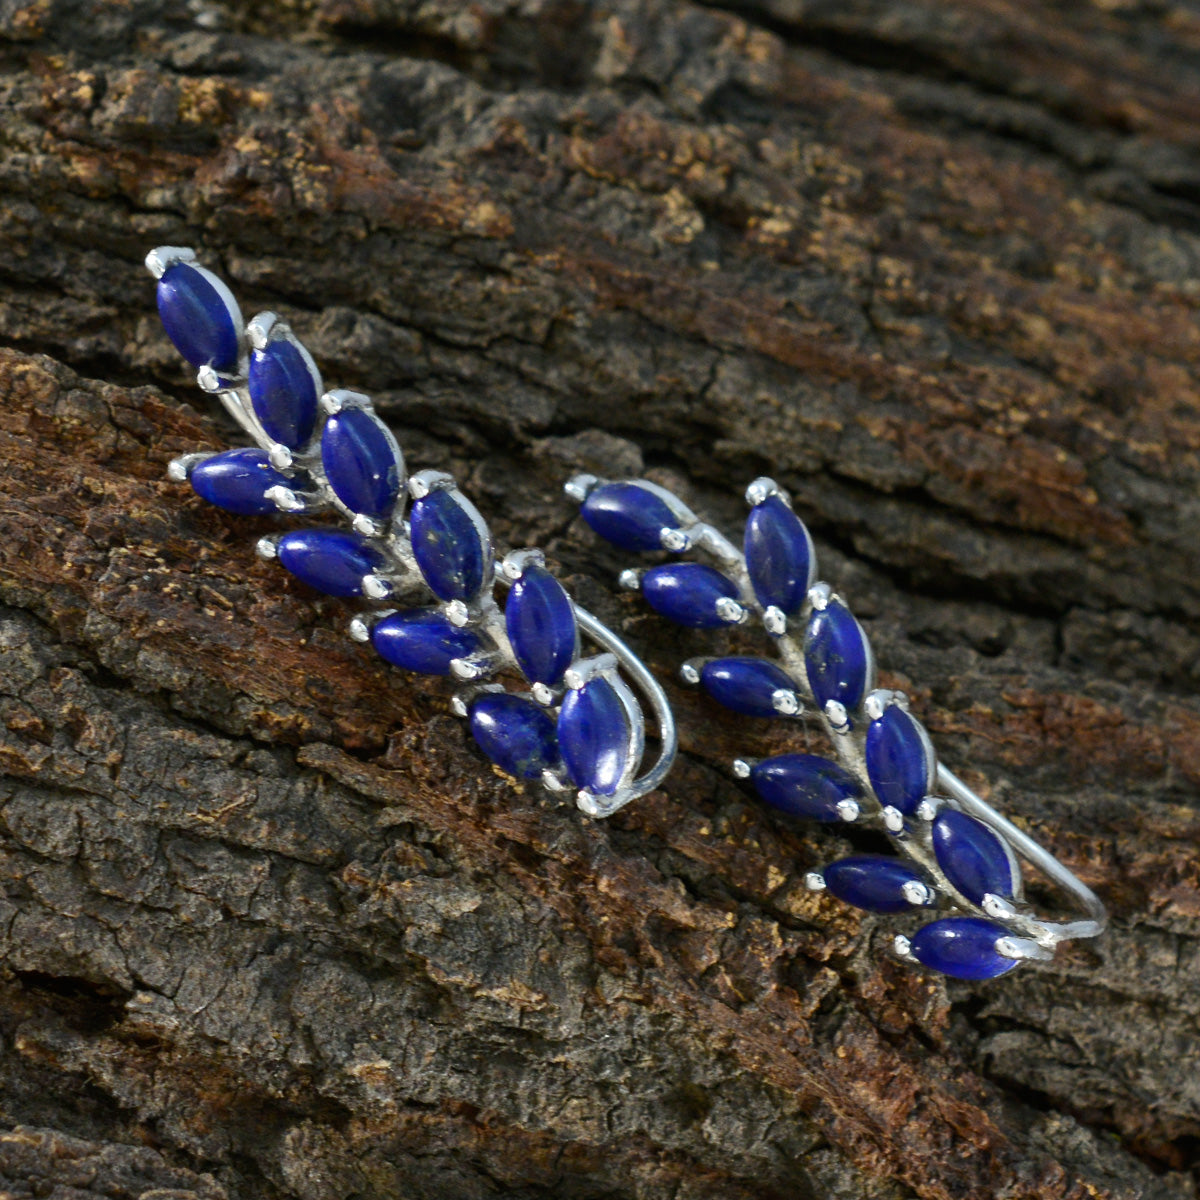 Riyo exquis 925 boucle d'oreille en argent sterling pour femme lapis lazuli boucle d'oreille réglage de la lunette boucle d'oreille bleue boucle d'oreille manchette